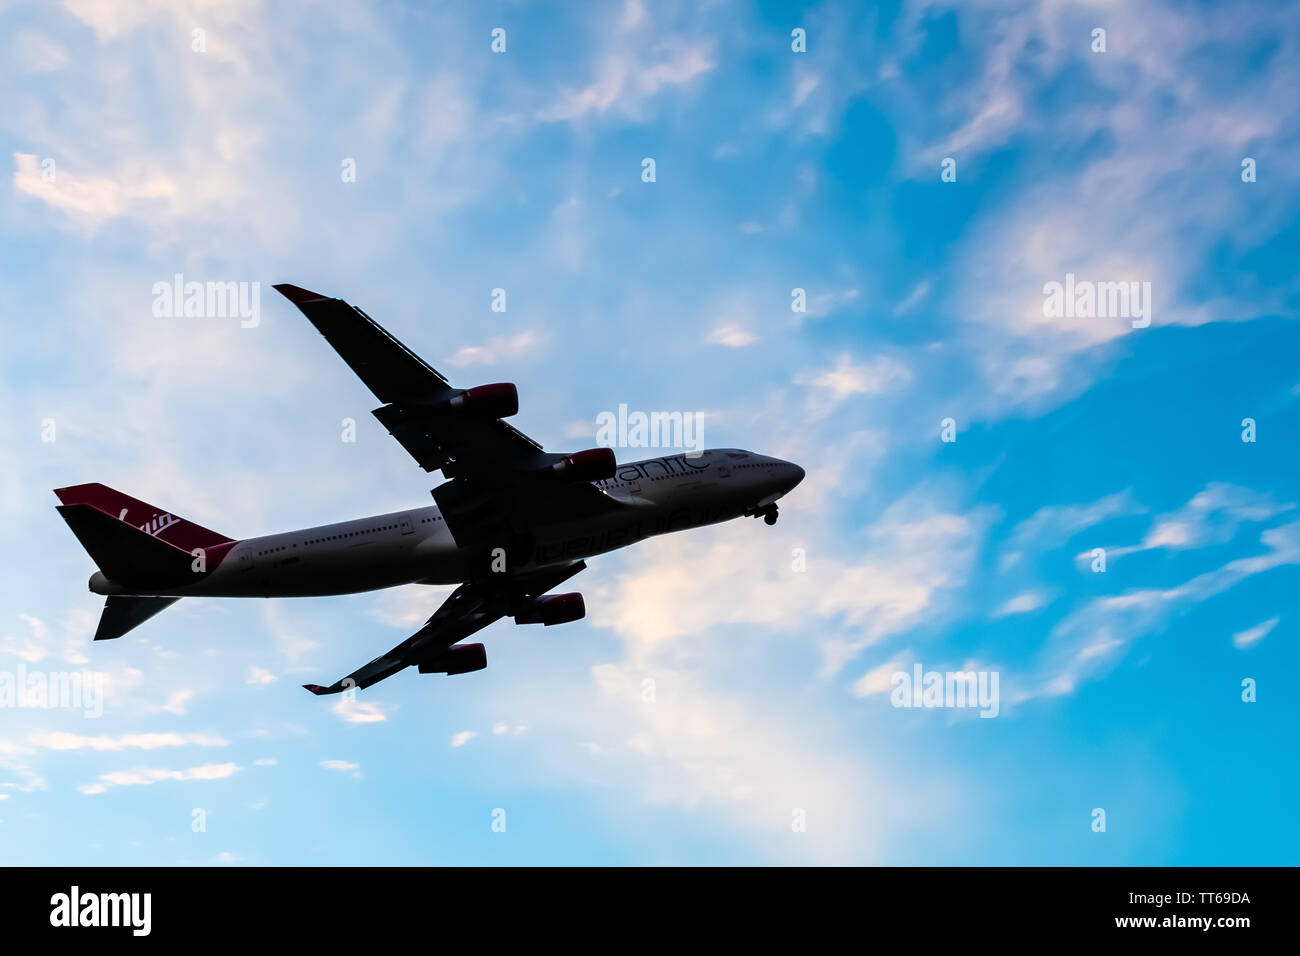 Montego Bay, Jamaïque - 21 mai 2019 - Virgin Atlantic Airlines Boeing 747-443 appareil décoller de Sangster International (MBJ) aéroport Banque D'Images